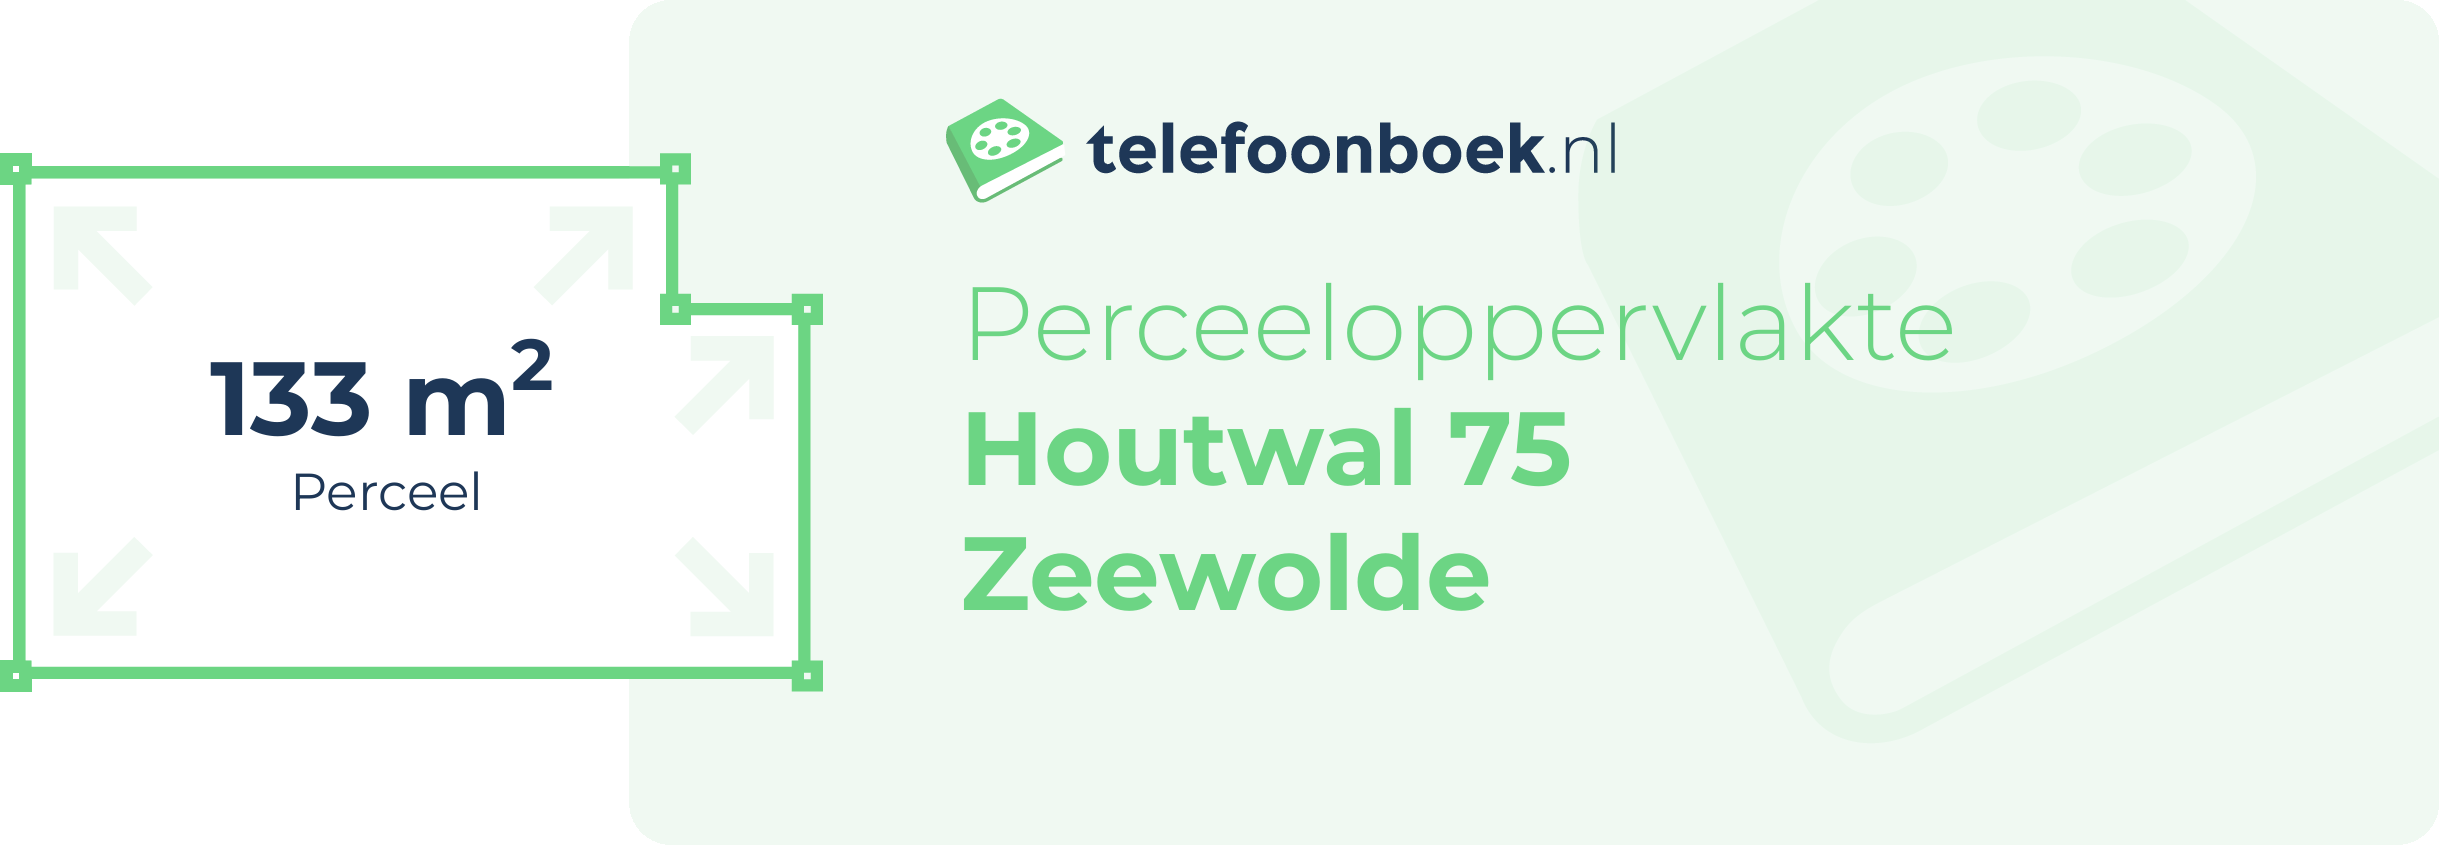 Perceeloppervlakte Houtwal 75 Zeewolde